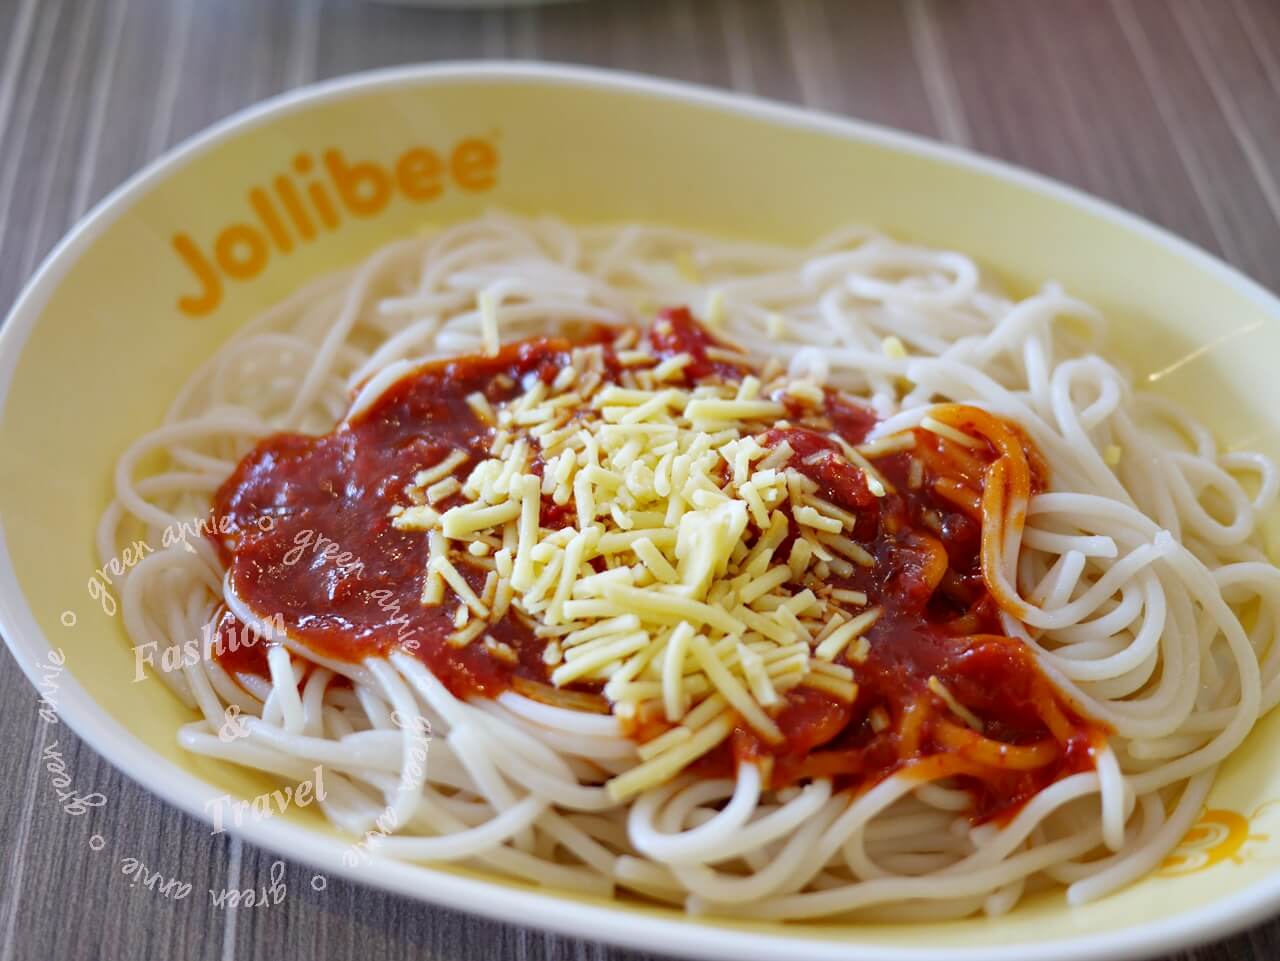 菲律賓美食推薦-Jollibe